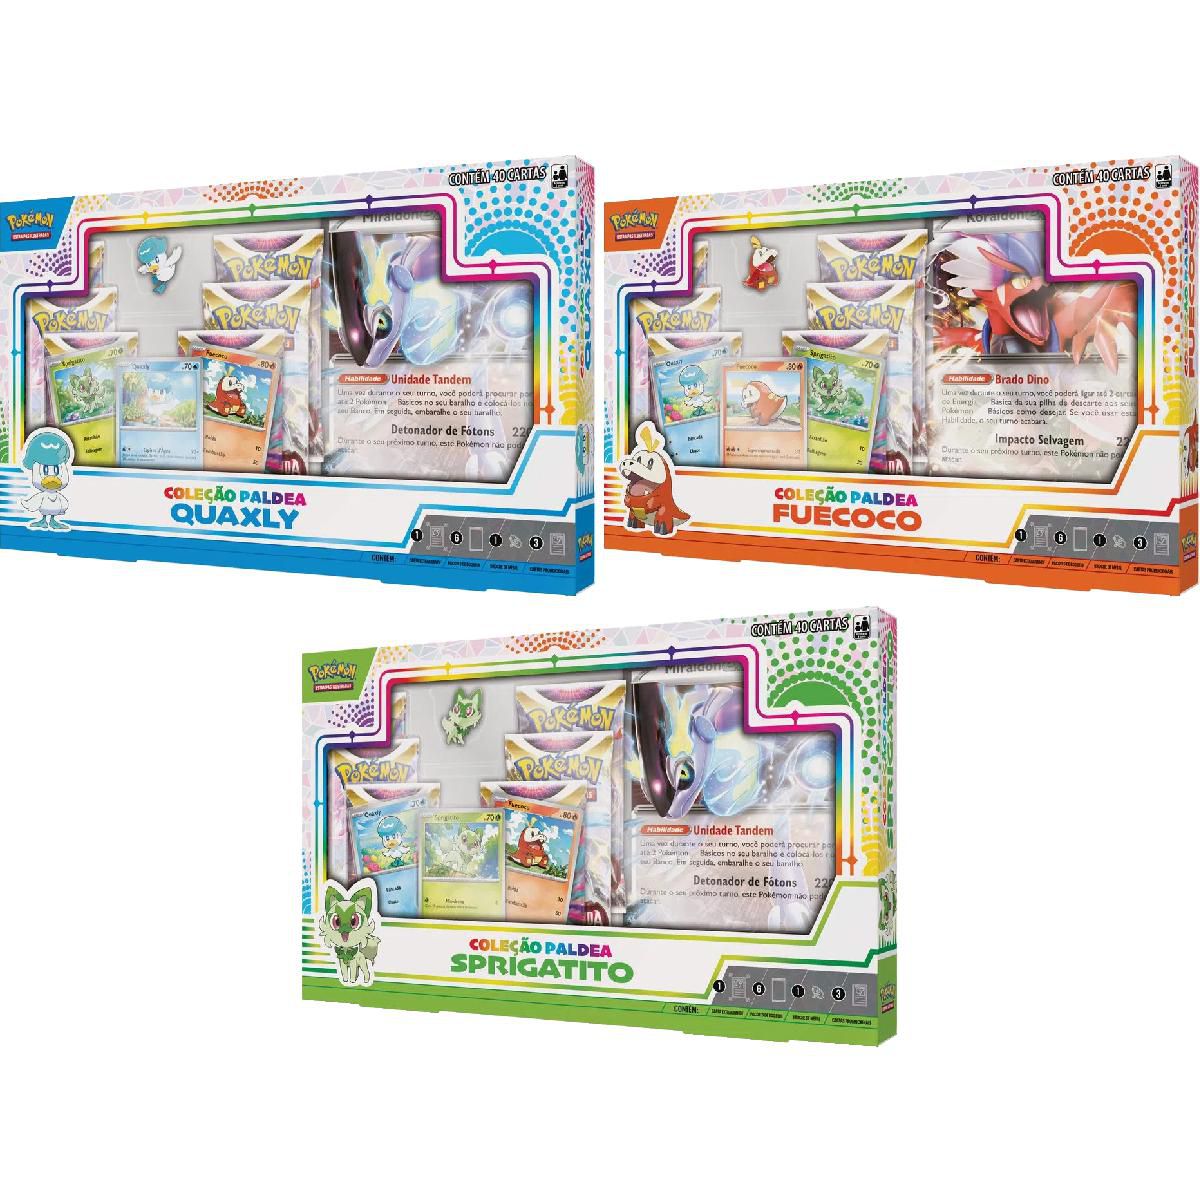 Box Pokémon Coleção Paldea Fuecoco com Broche e Carta Gigante Koraidon EX  Copag